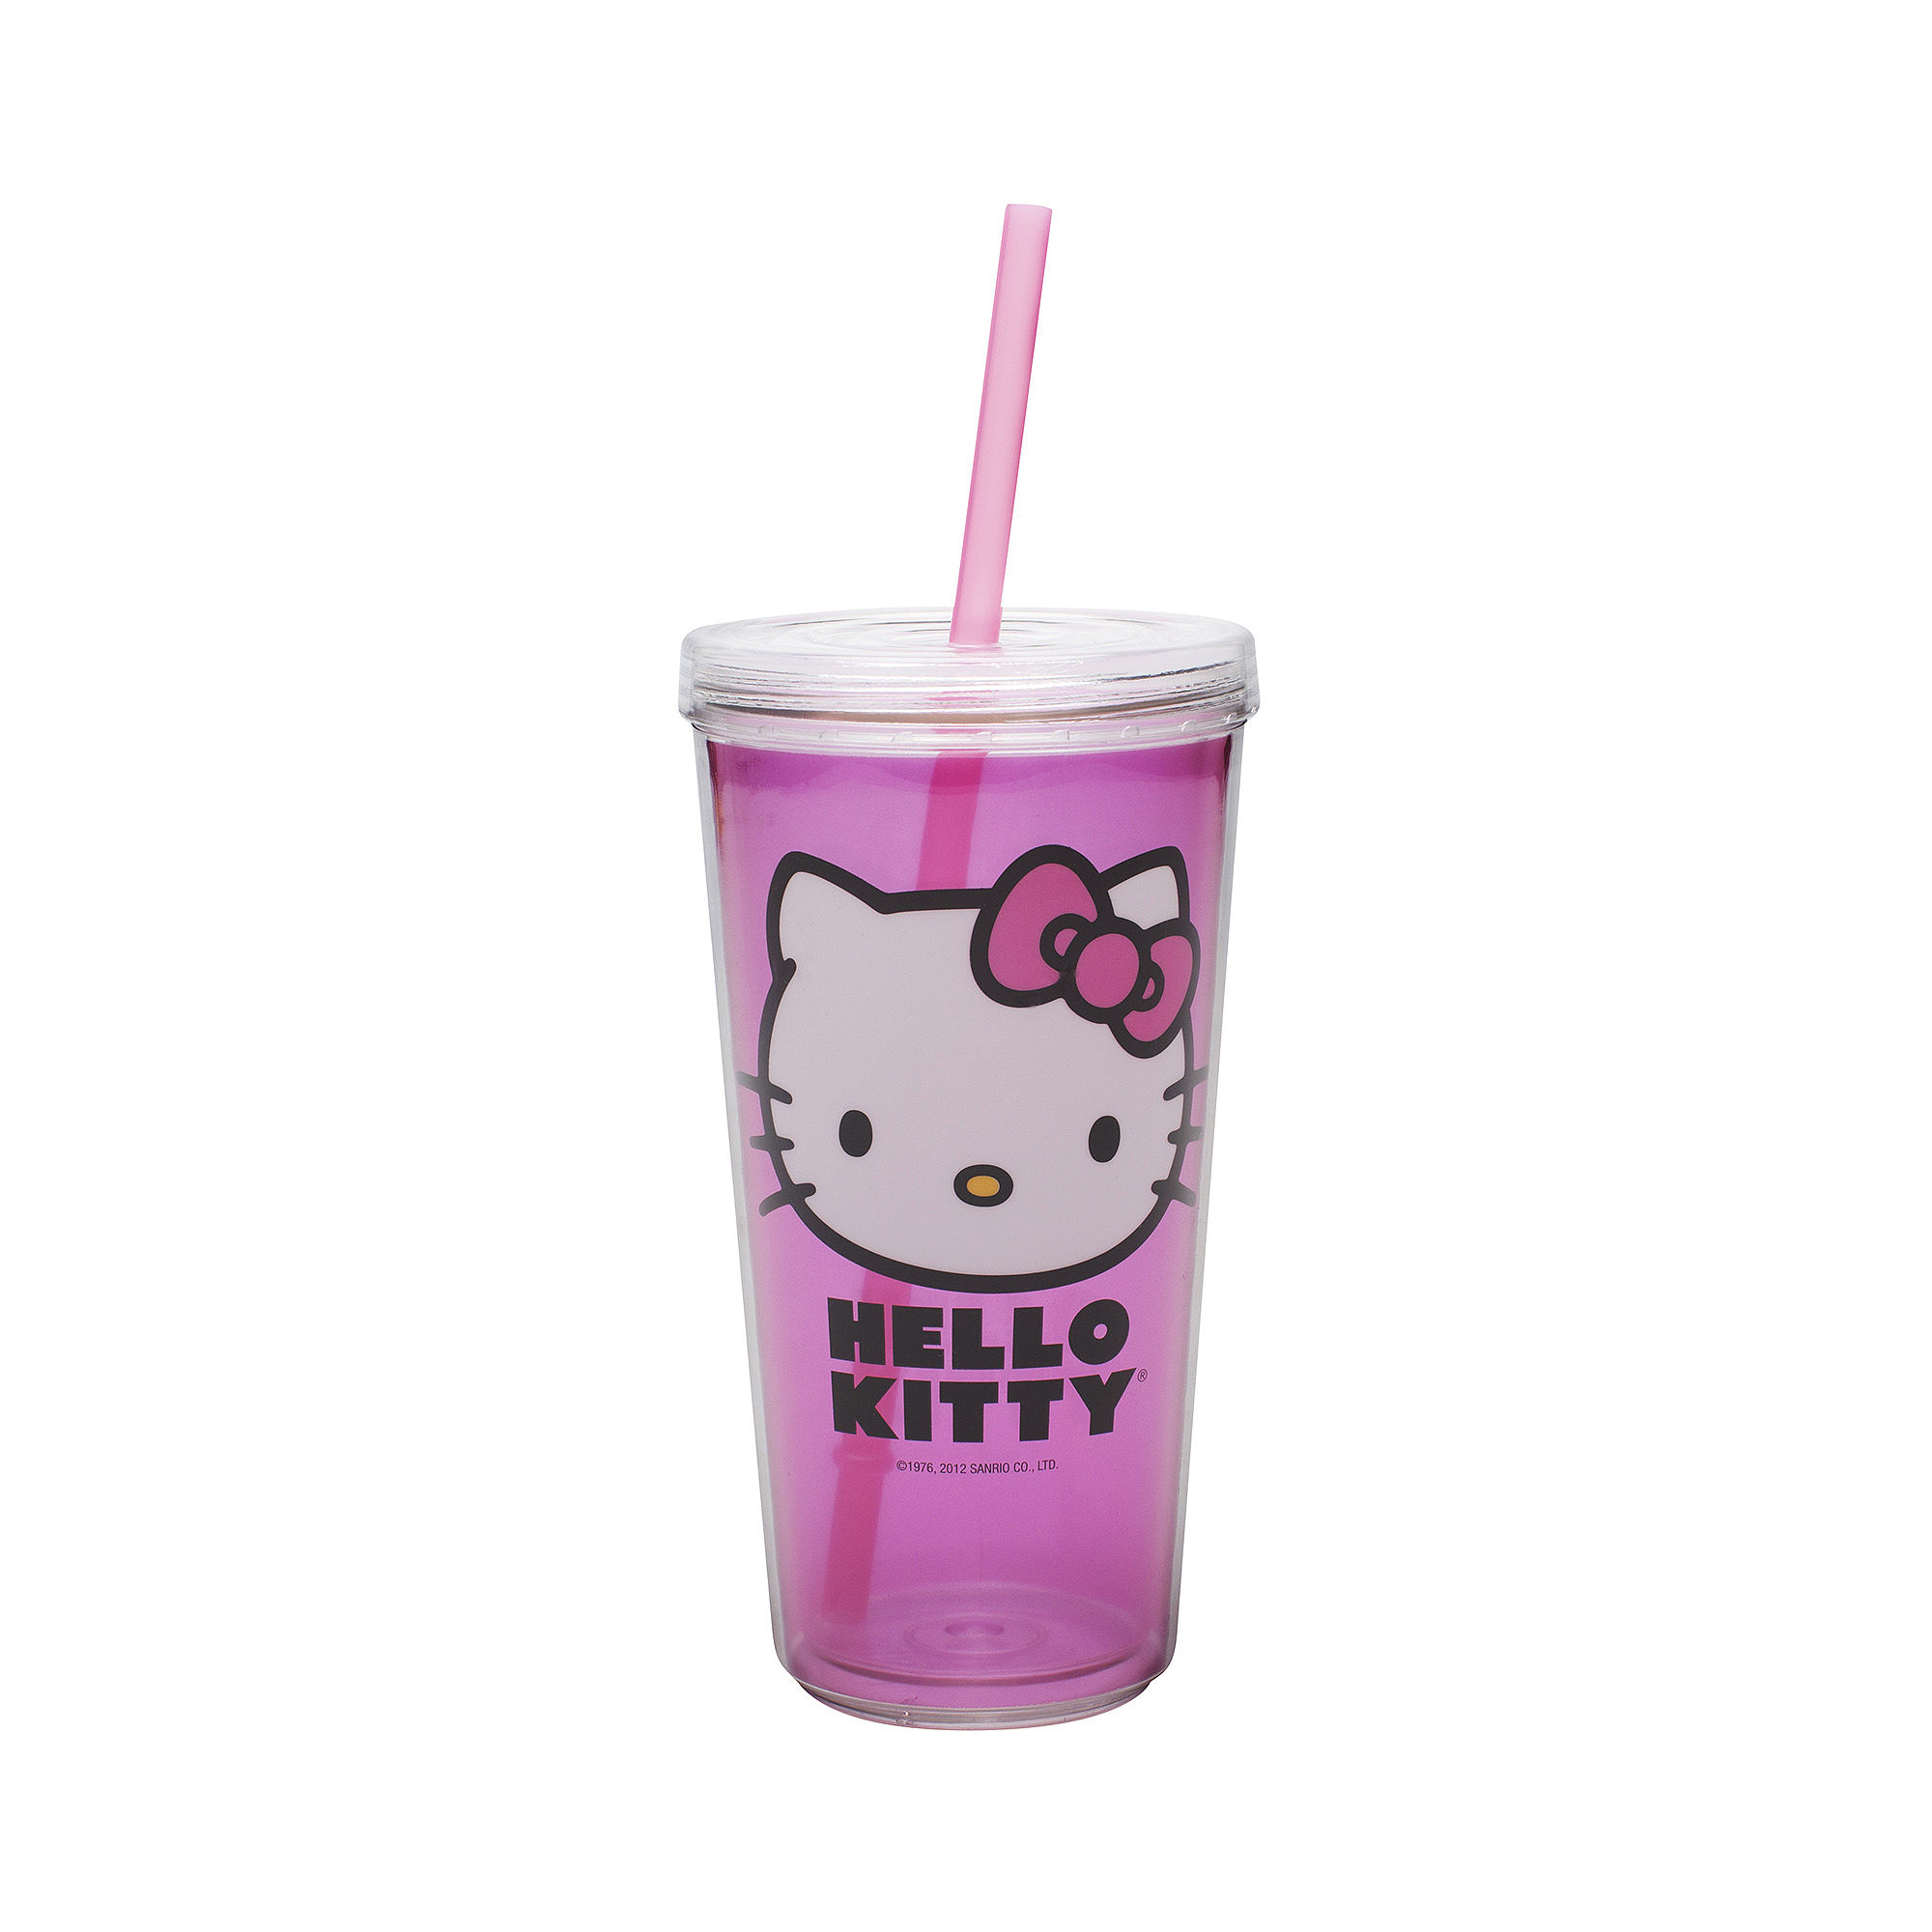 Zak Designs Hello Kitty 16-oz. Tumbler with Straw